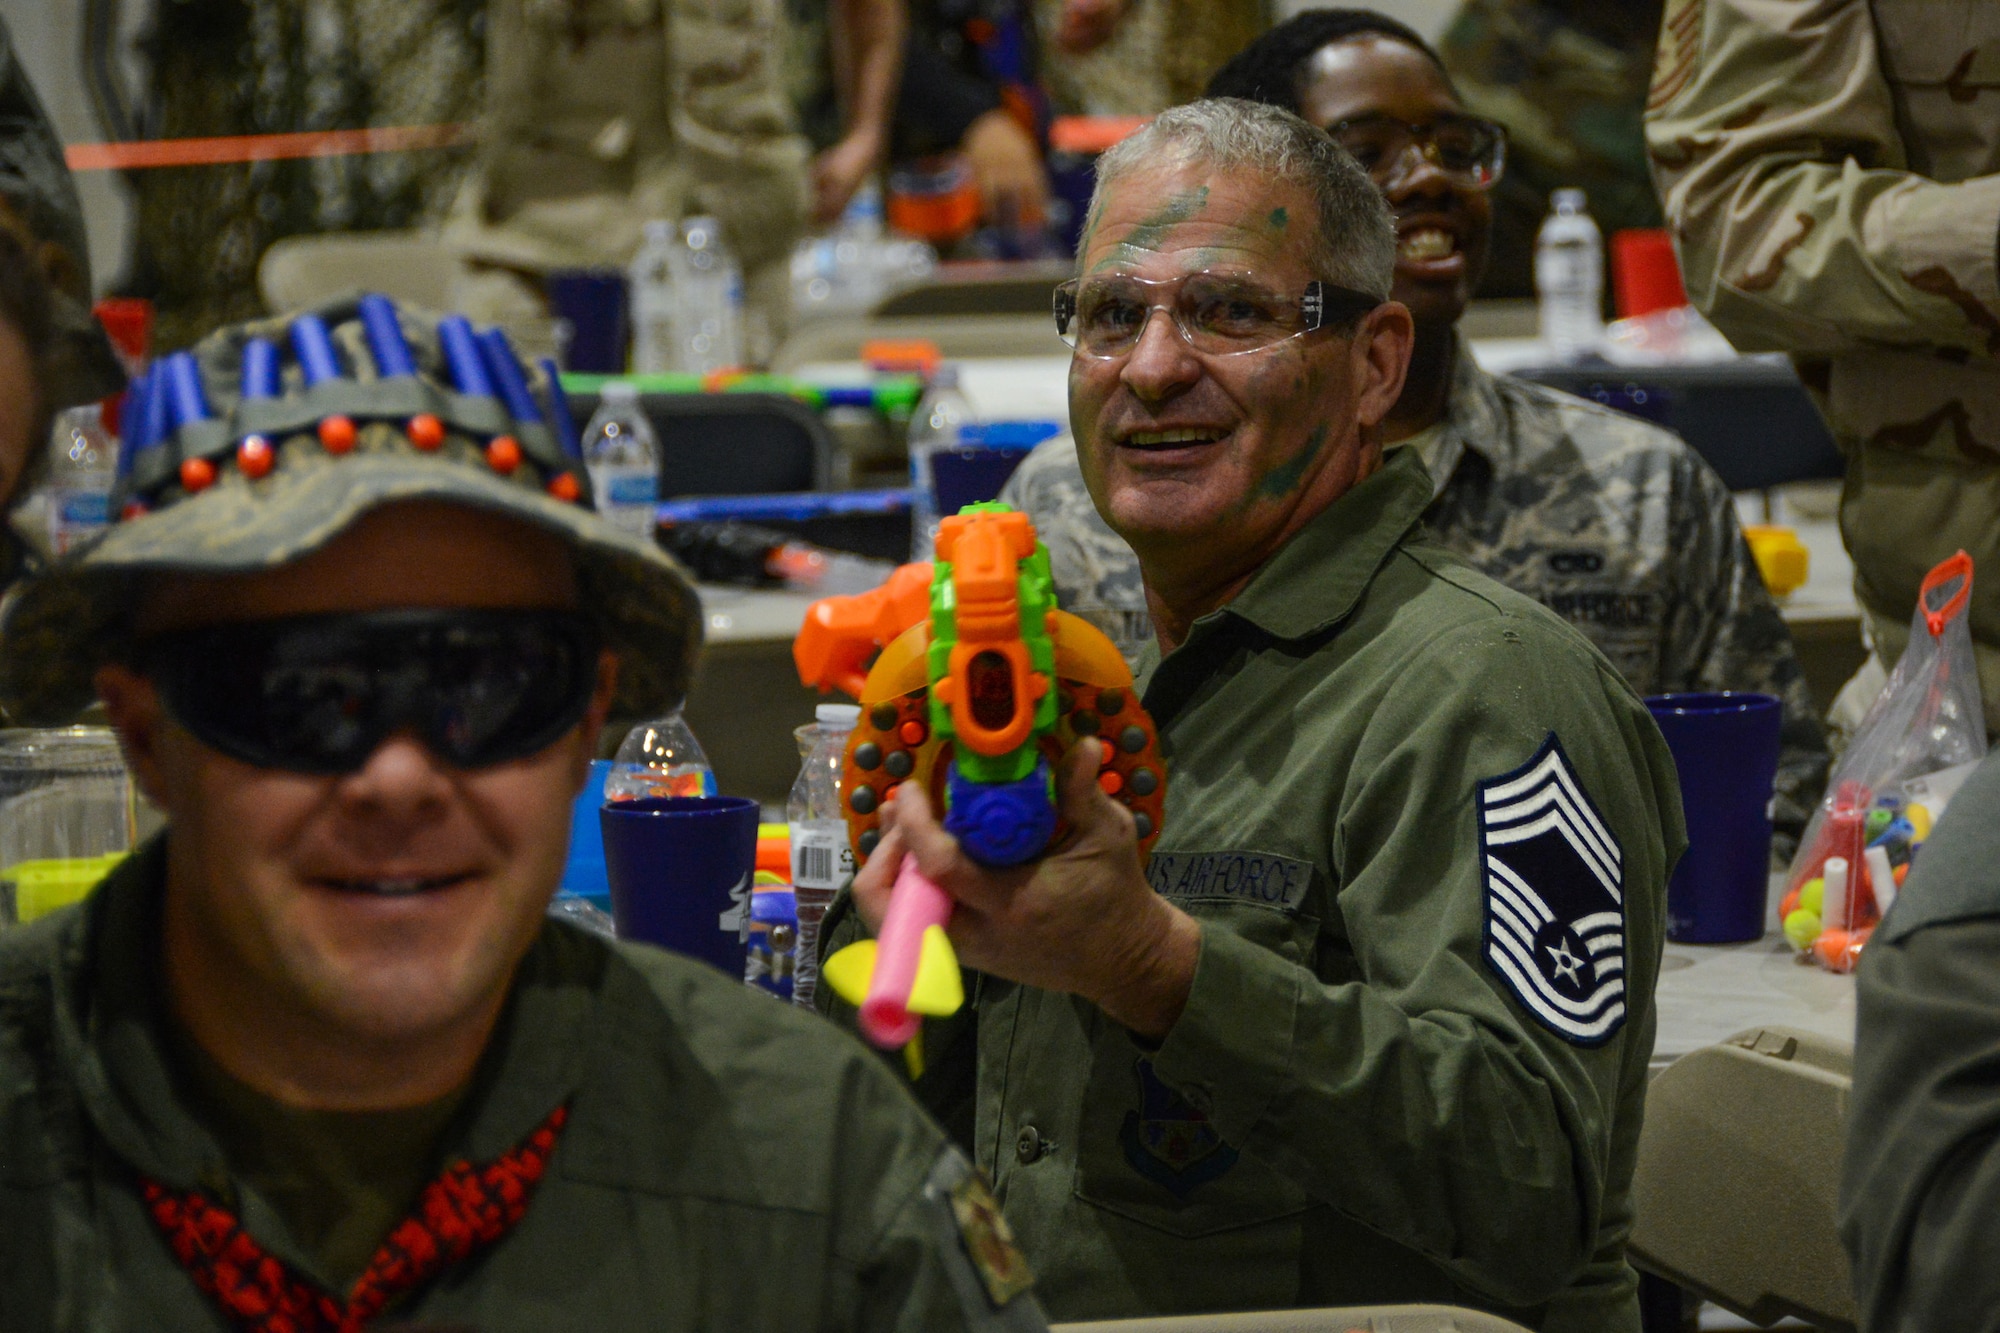 A Texas Air National Guard Chief Master Sergeant aims a foam dart gun toward the camera.